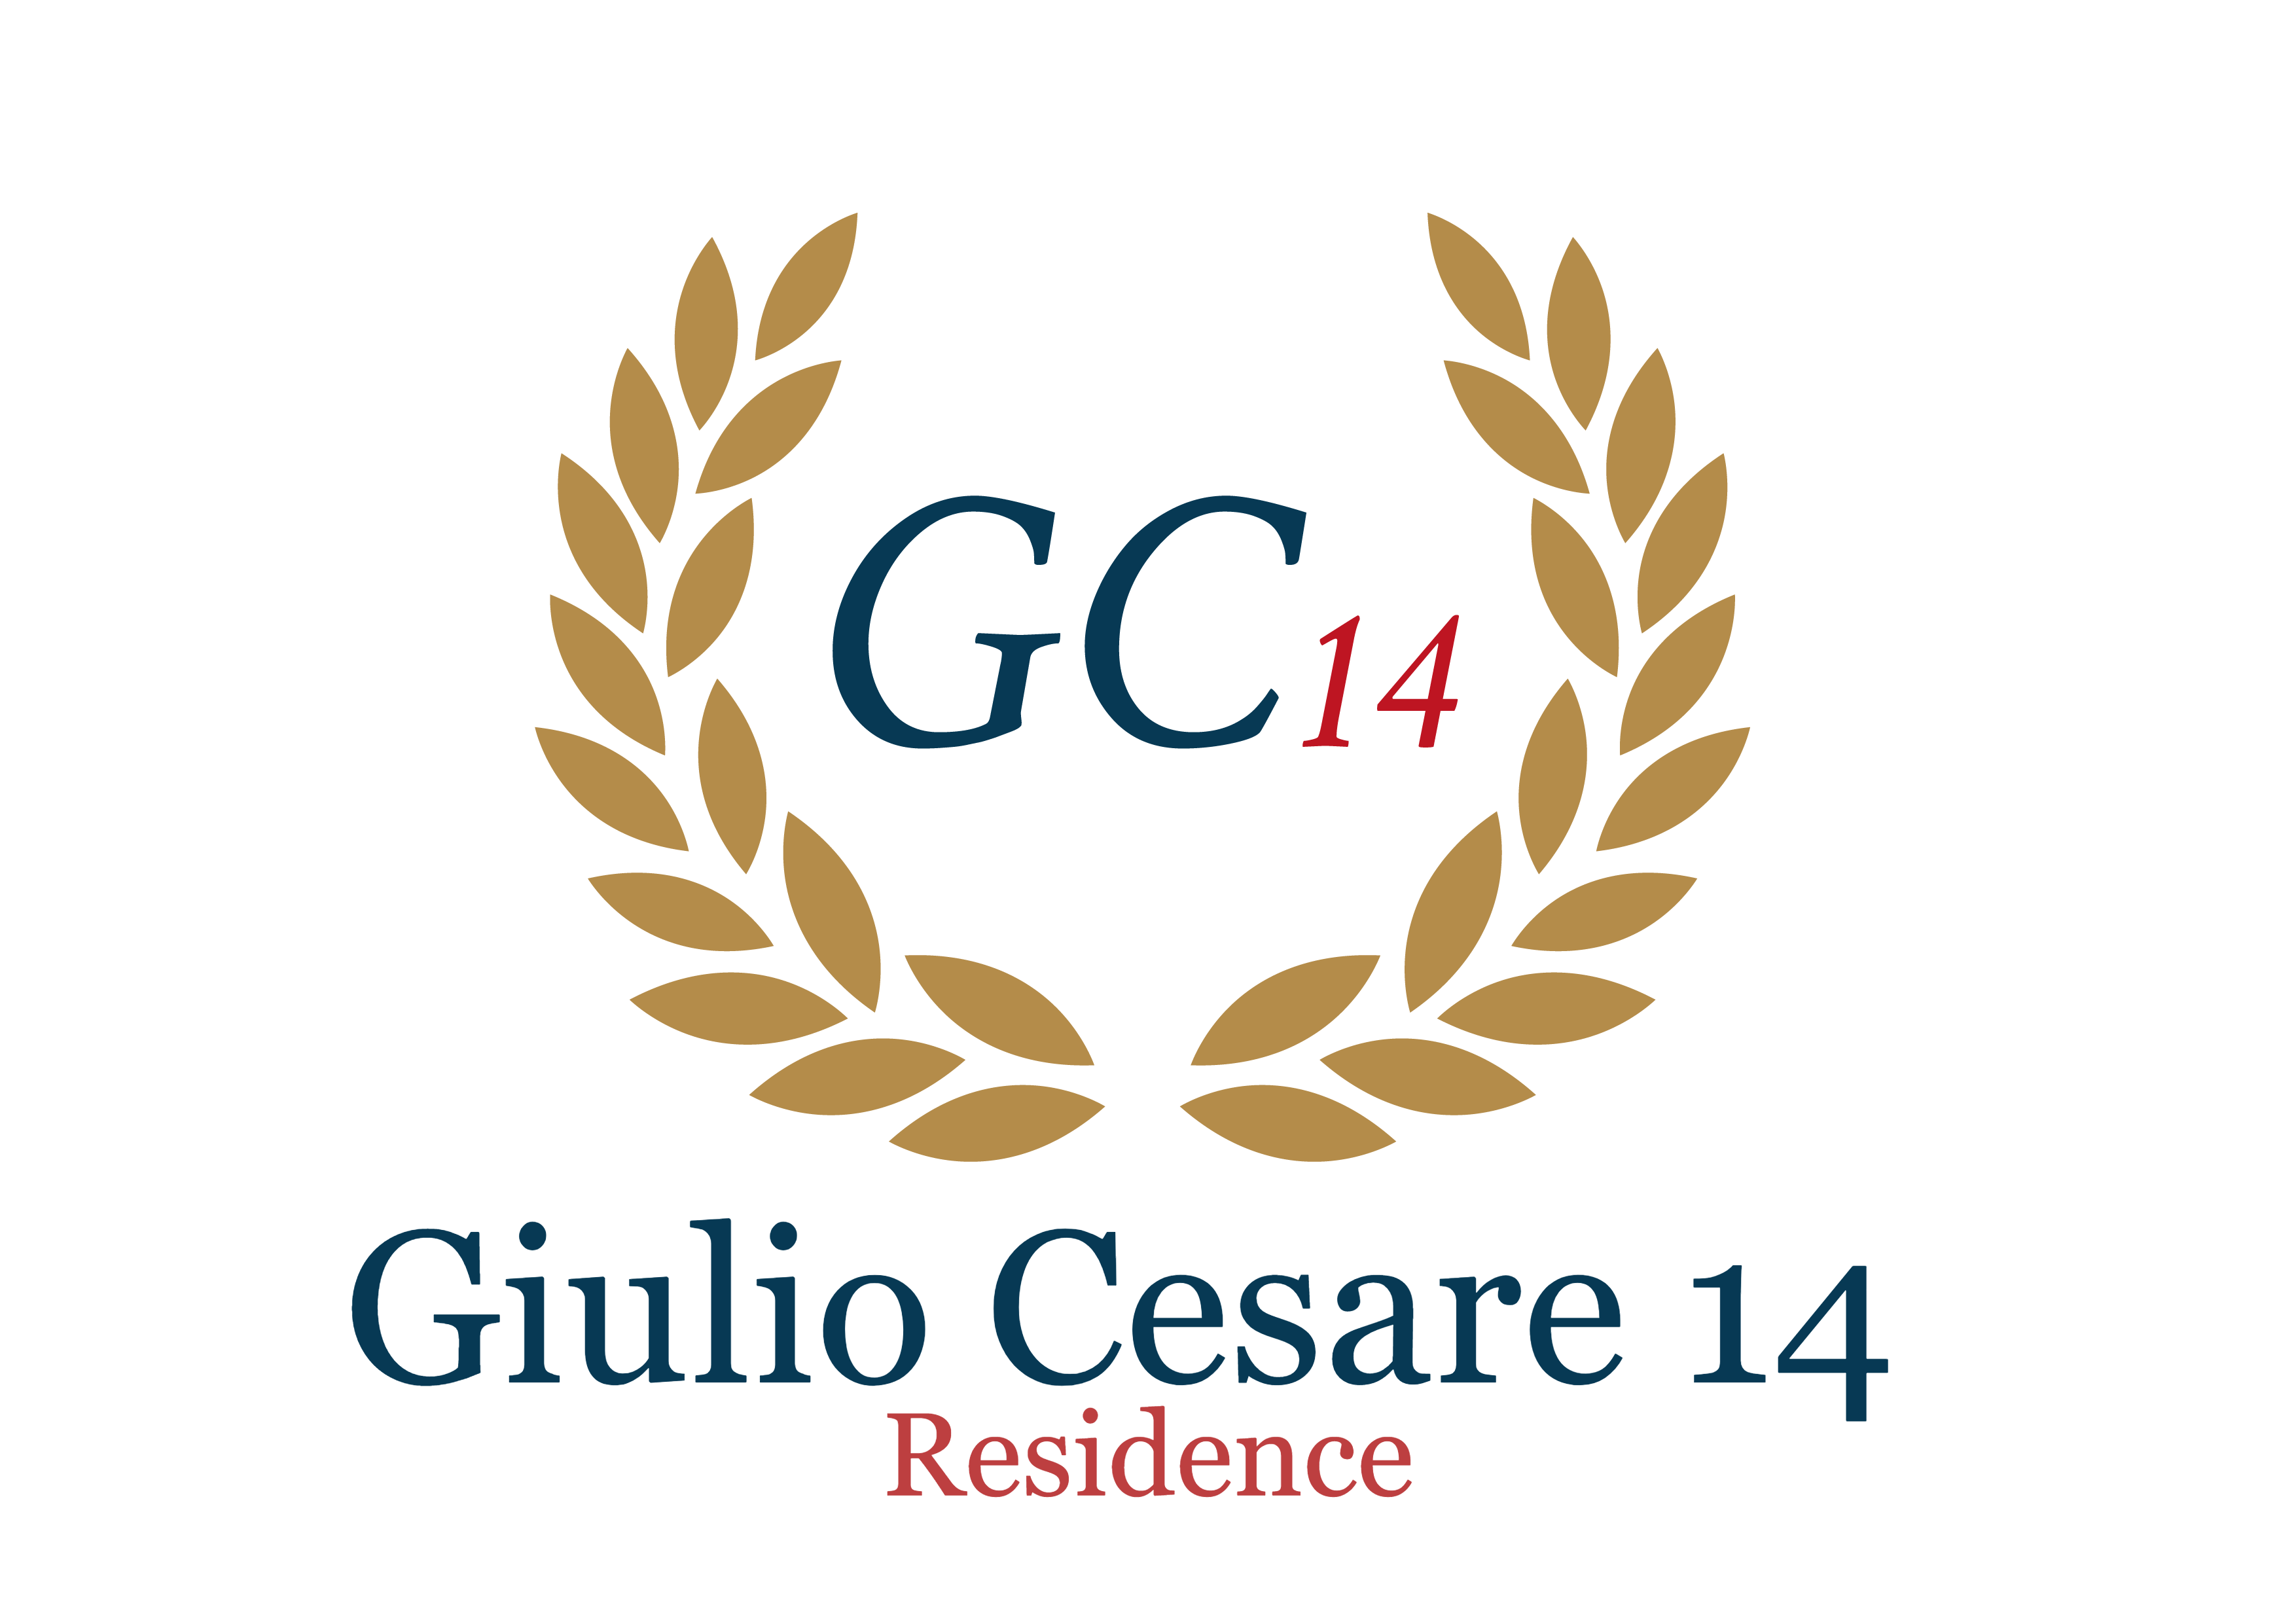 Giulio Cesare 14